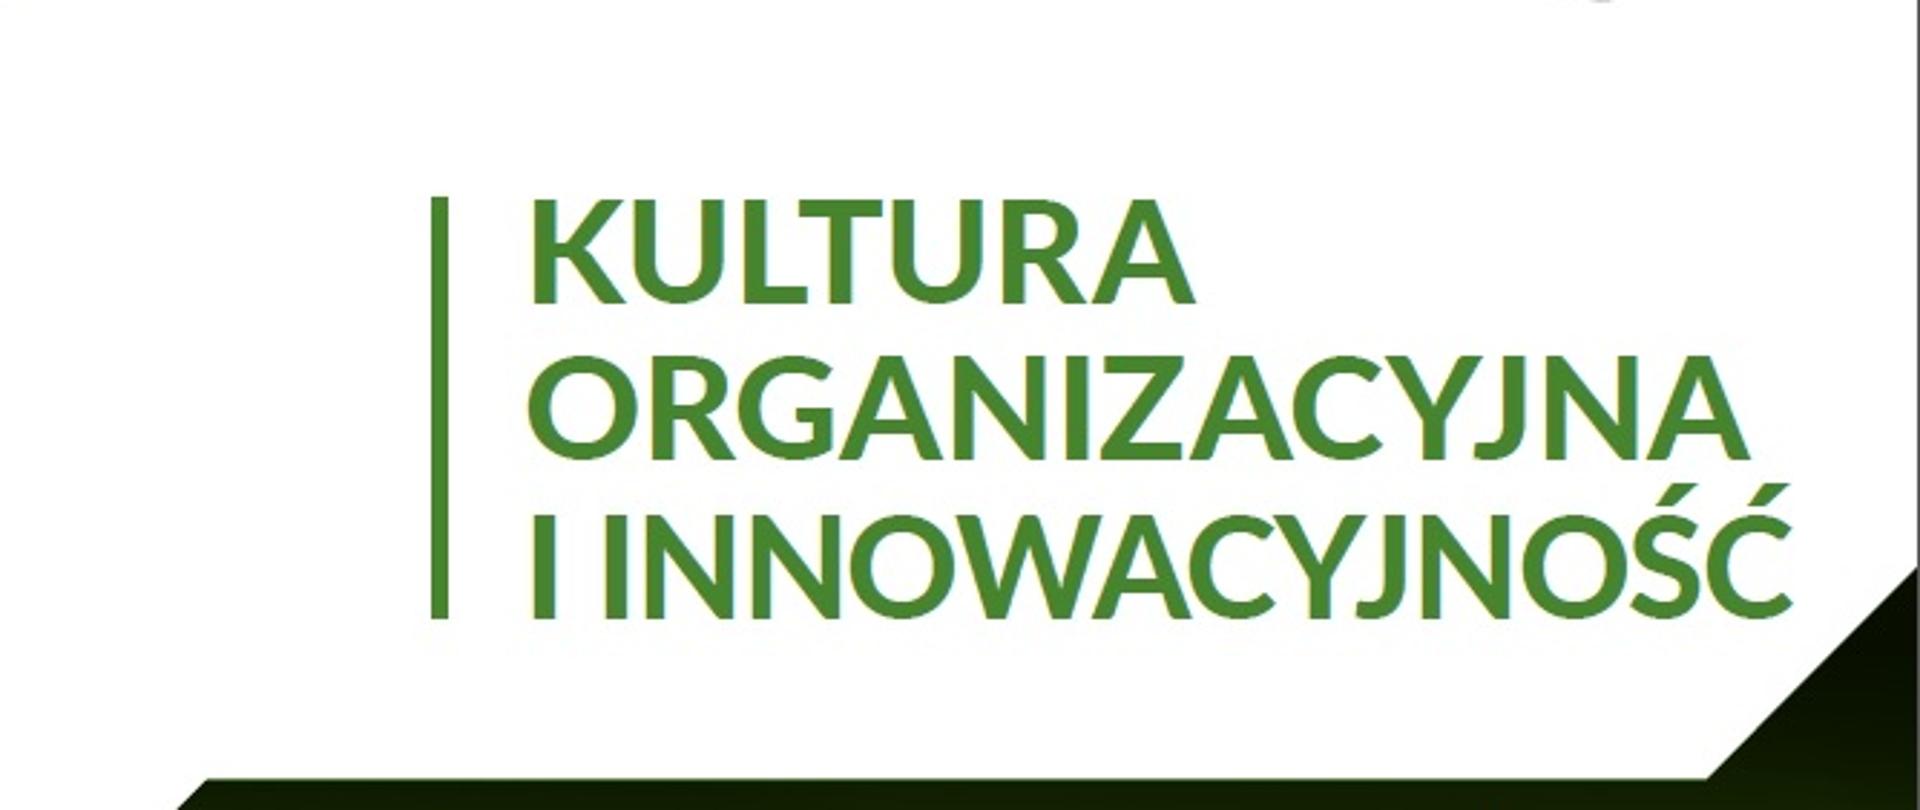 Kultura organizacyjna i innowacyjność. Wyniki badania beneficjentów NCBR